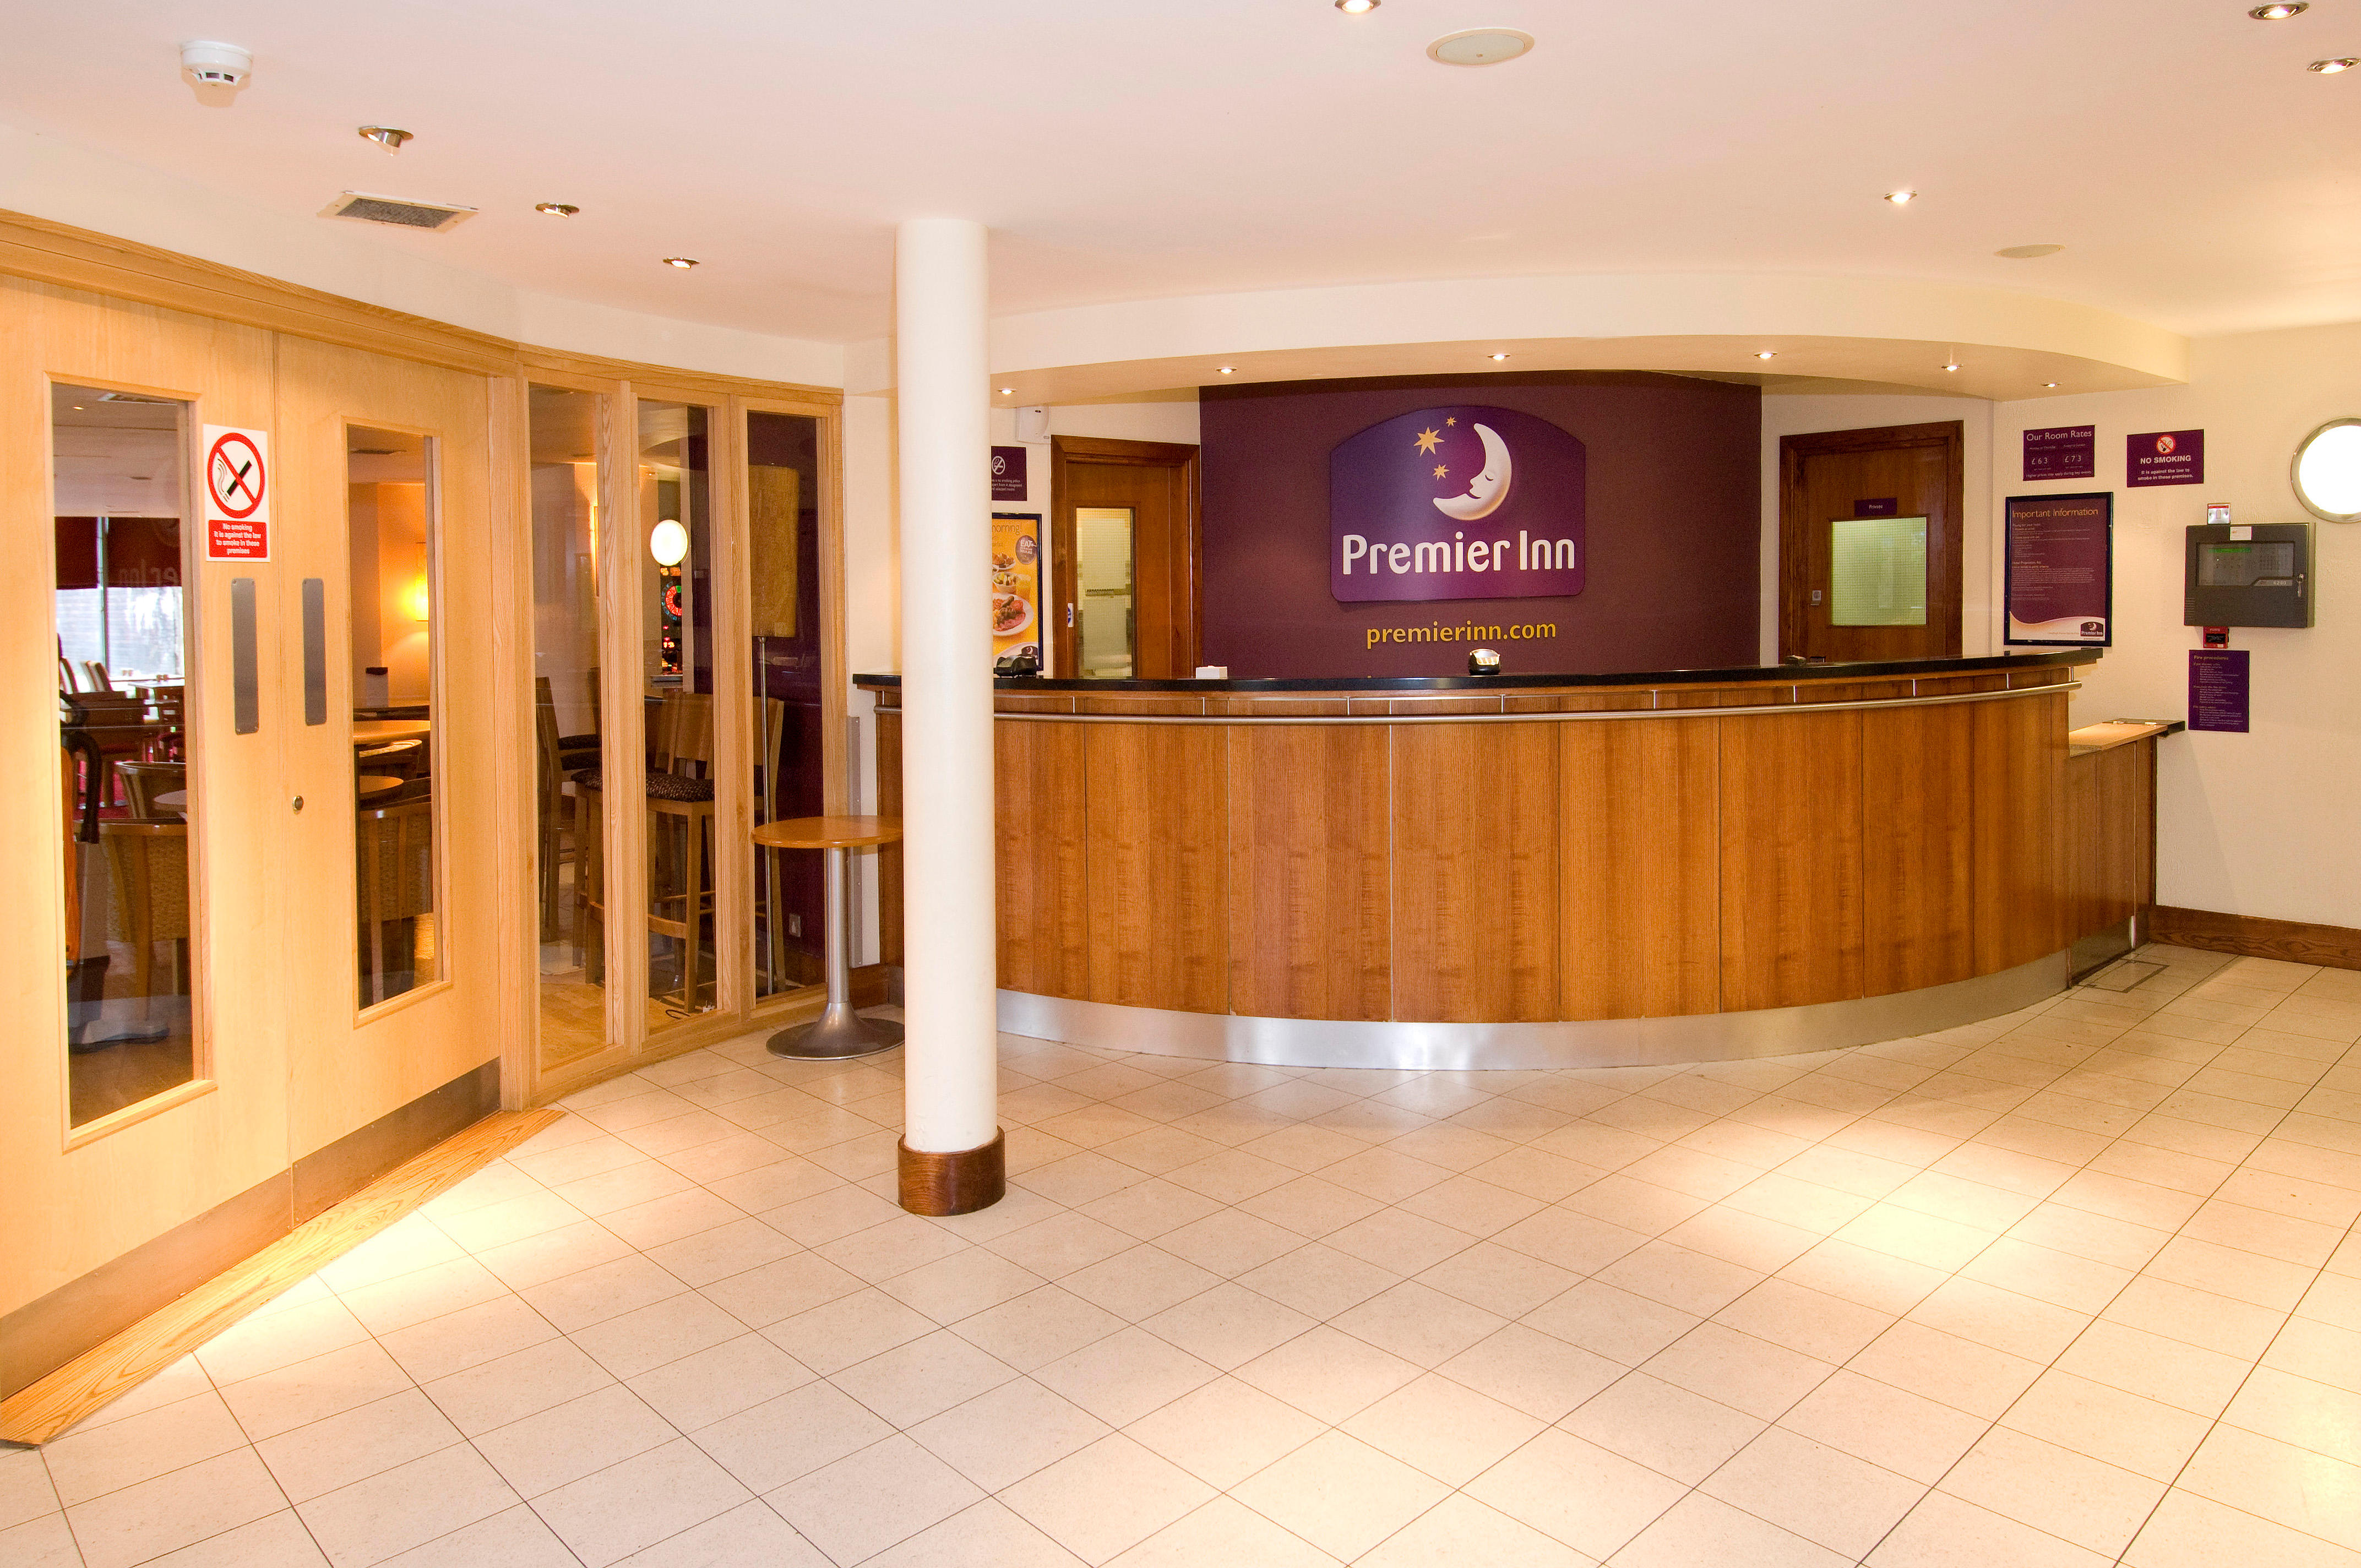 Premier Inn reception Premier Inn Nottingham Arena (London Road) hotel Nottingham 03333 211374